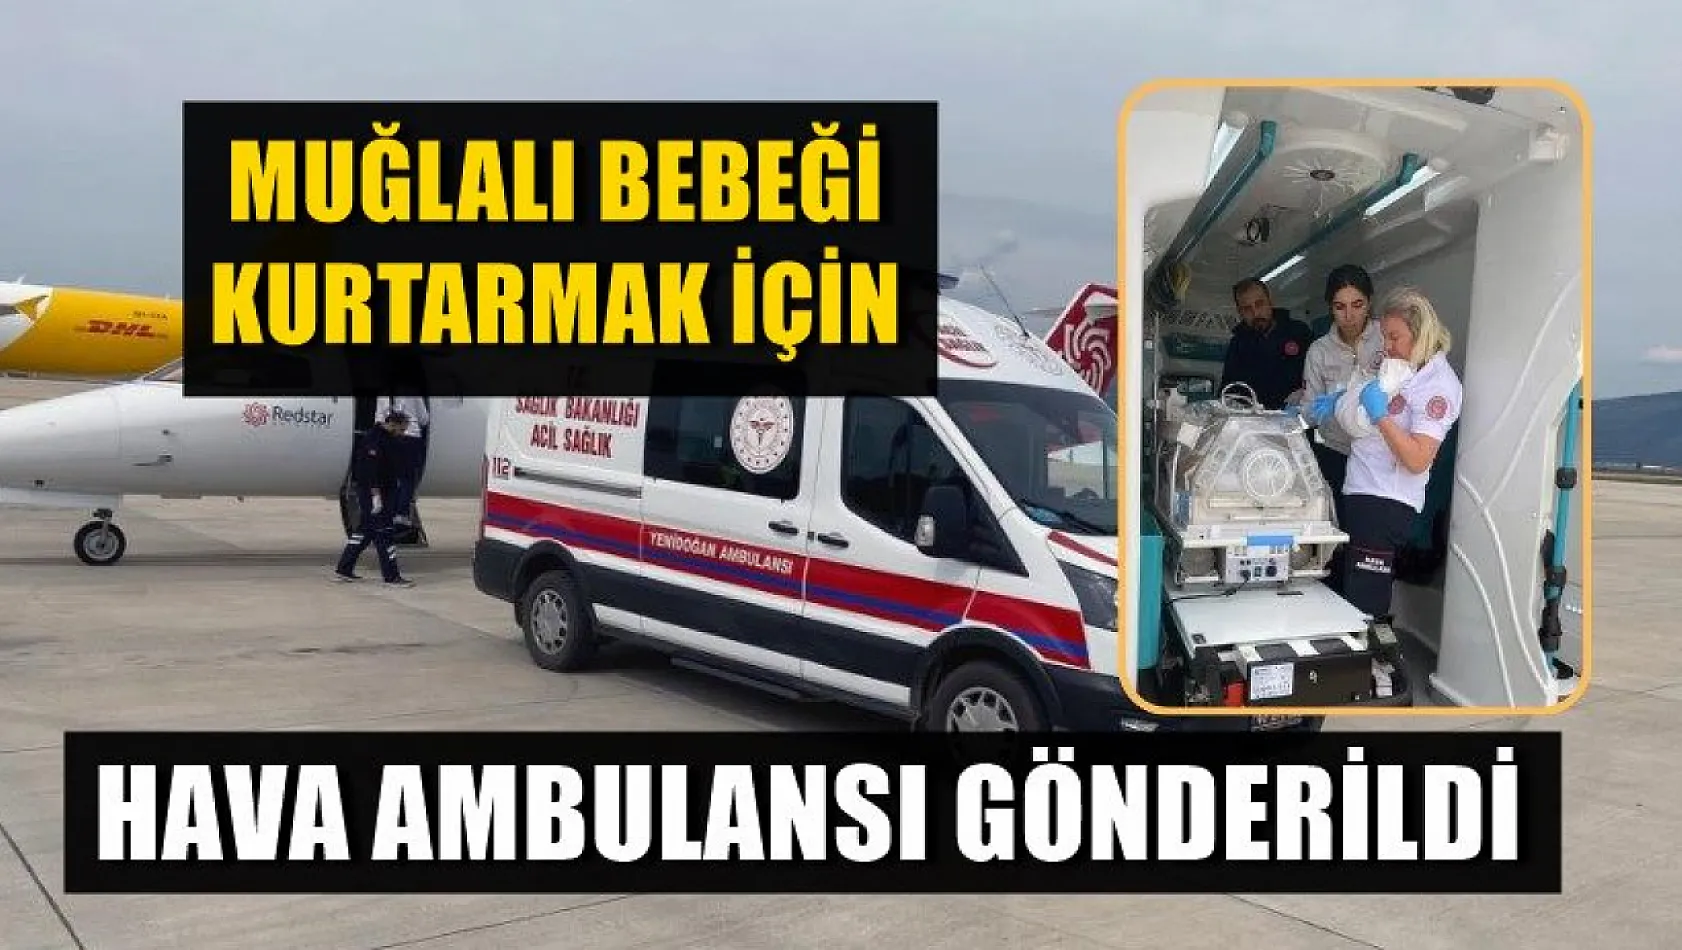 Muğlalı Bebeği Kurtarmak İçin Hava Ambulansı Gönderildi